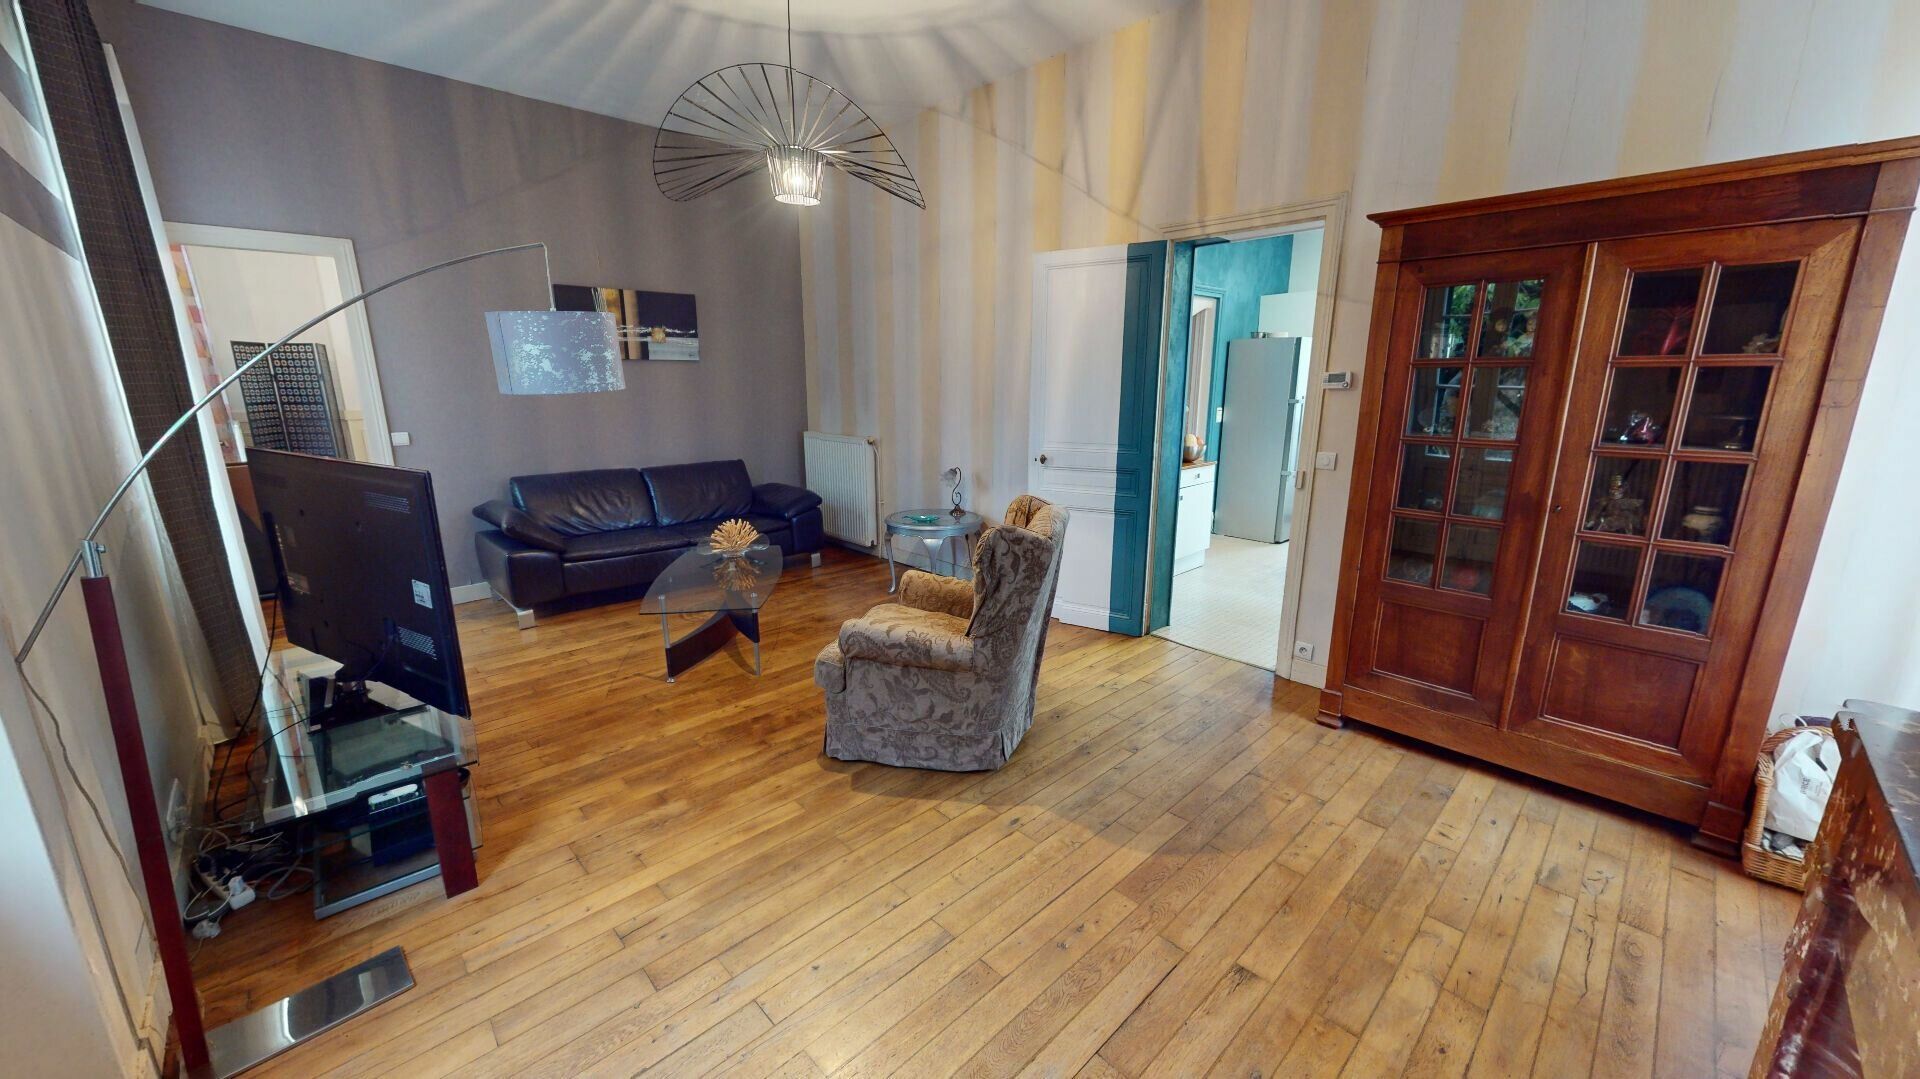 Maison à vendre 6 170m2 à Vernou-la-Celle-sur-Seine vignette-5